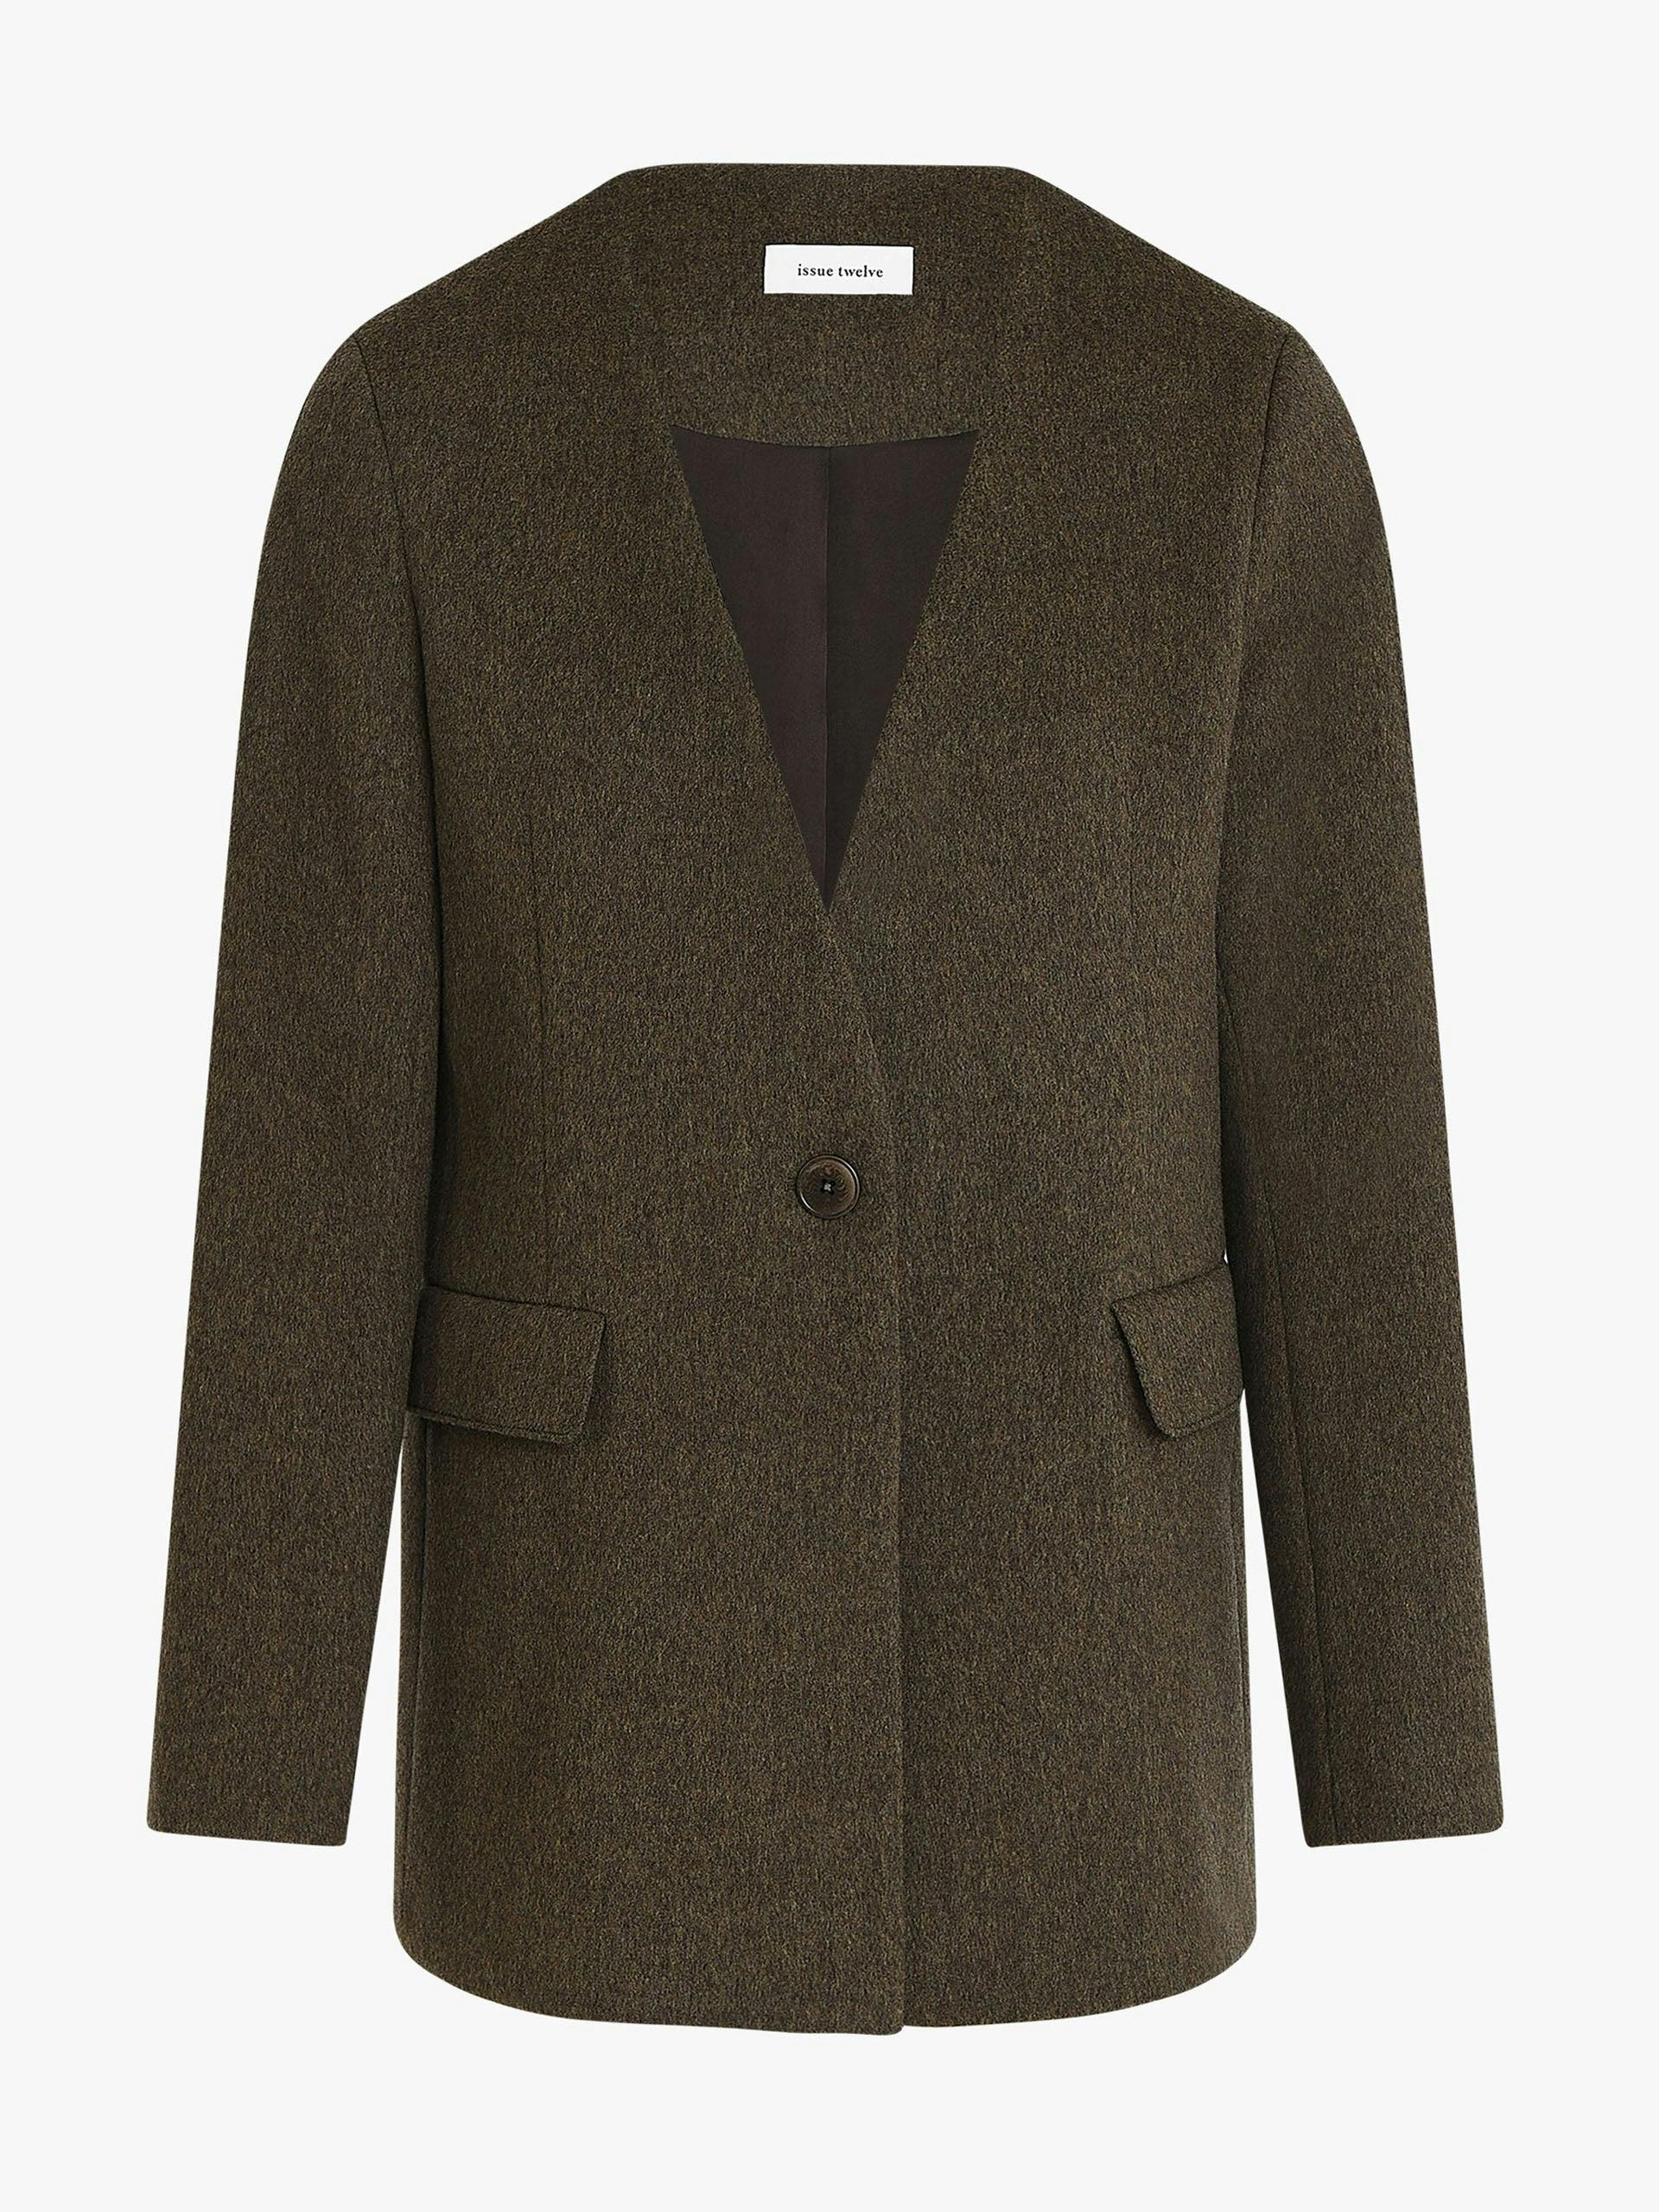 Devon green wool cashmere blazer